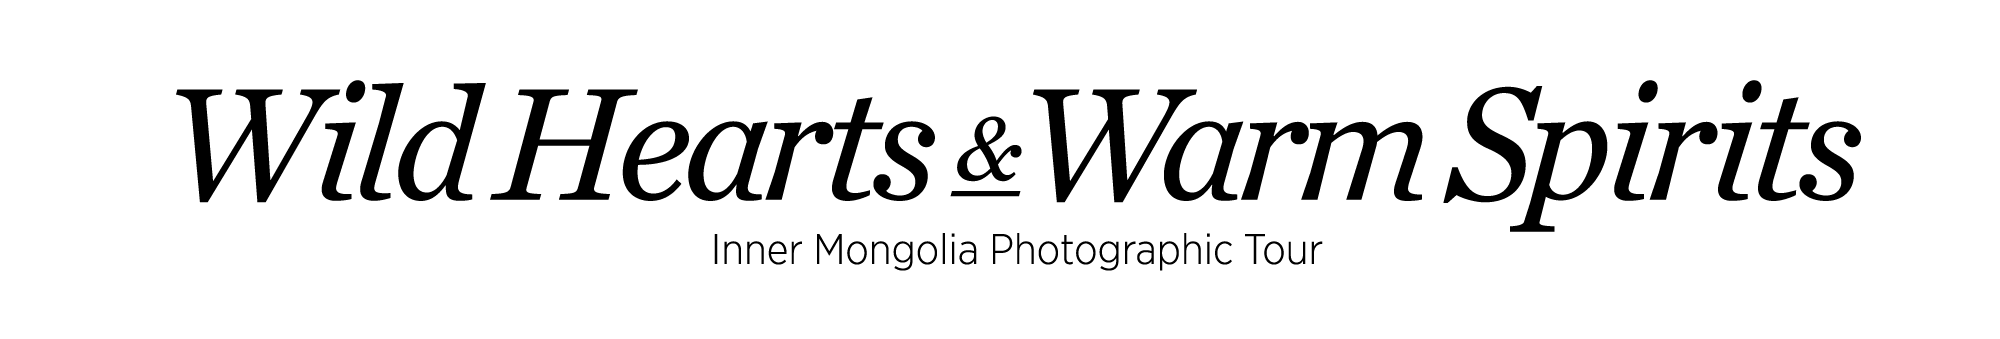 inner mongolia logo